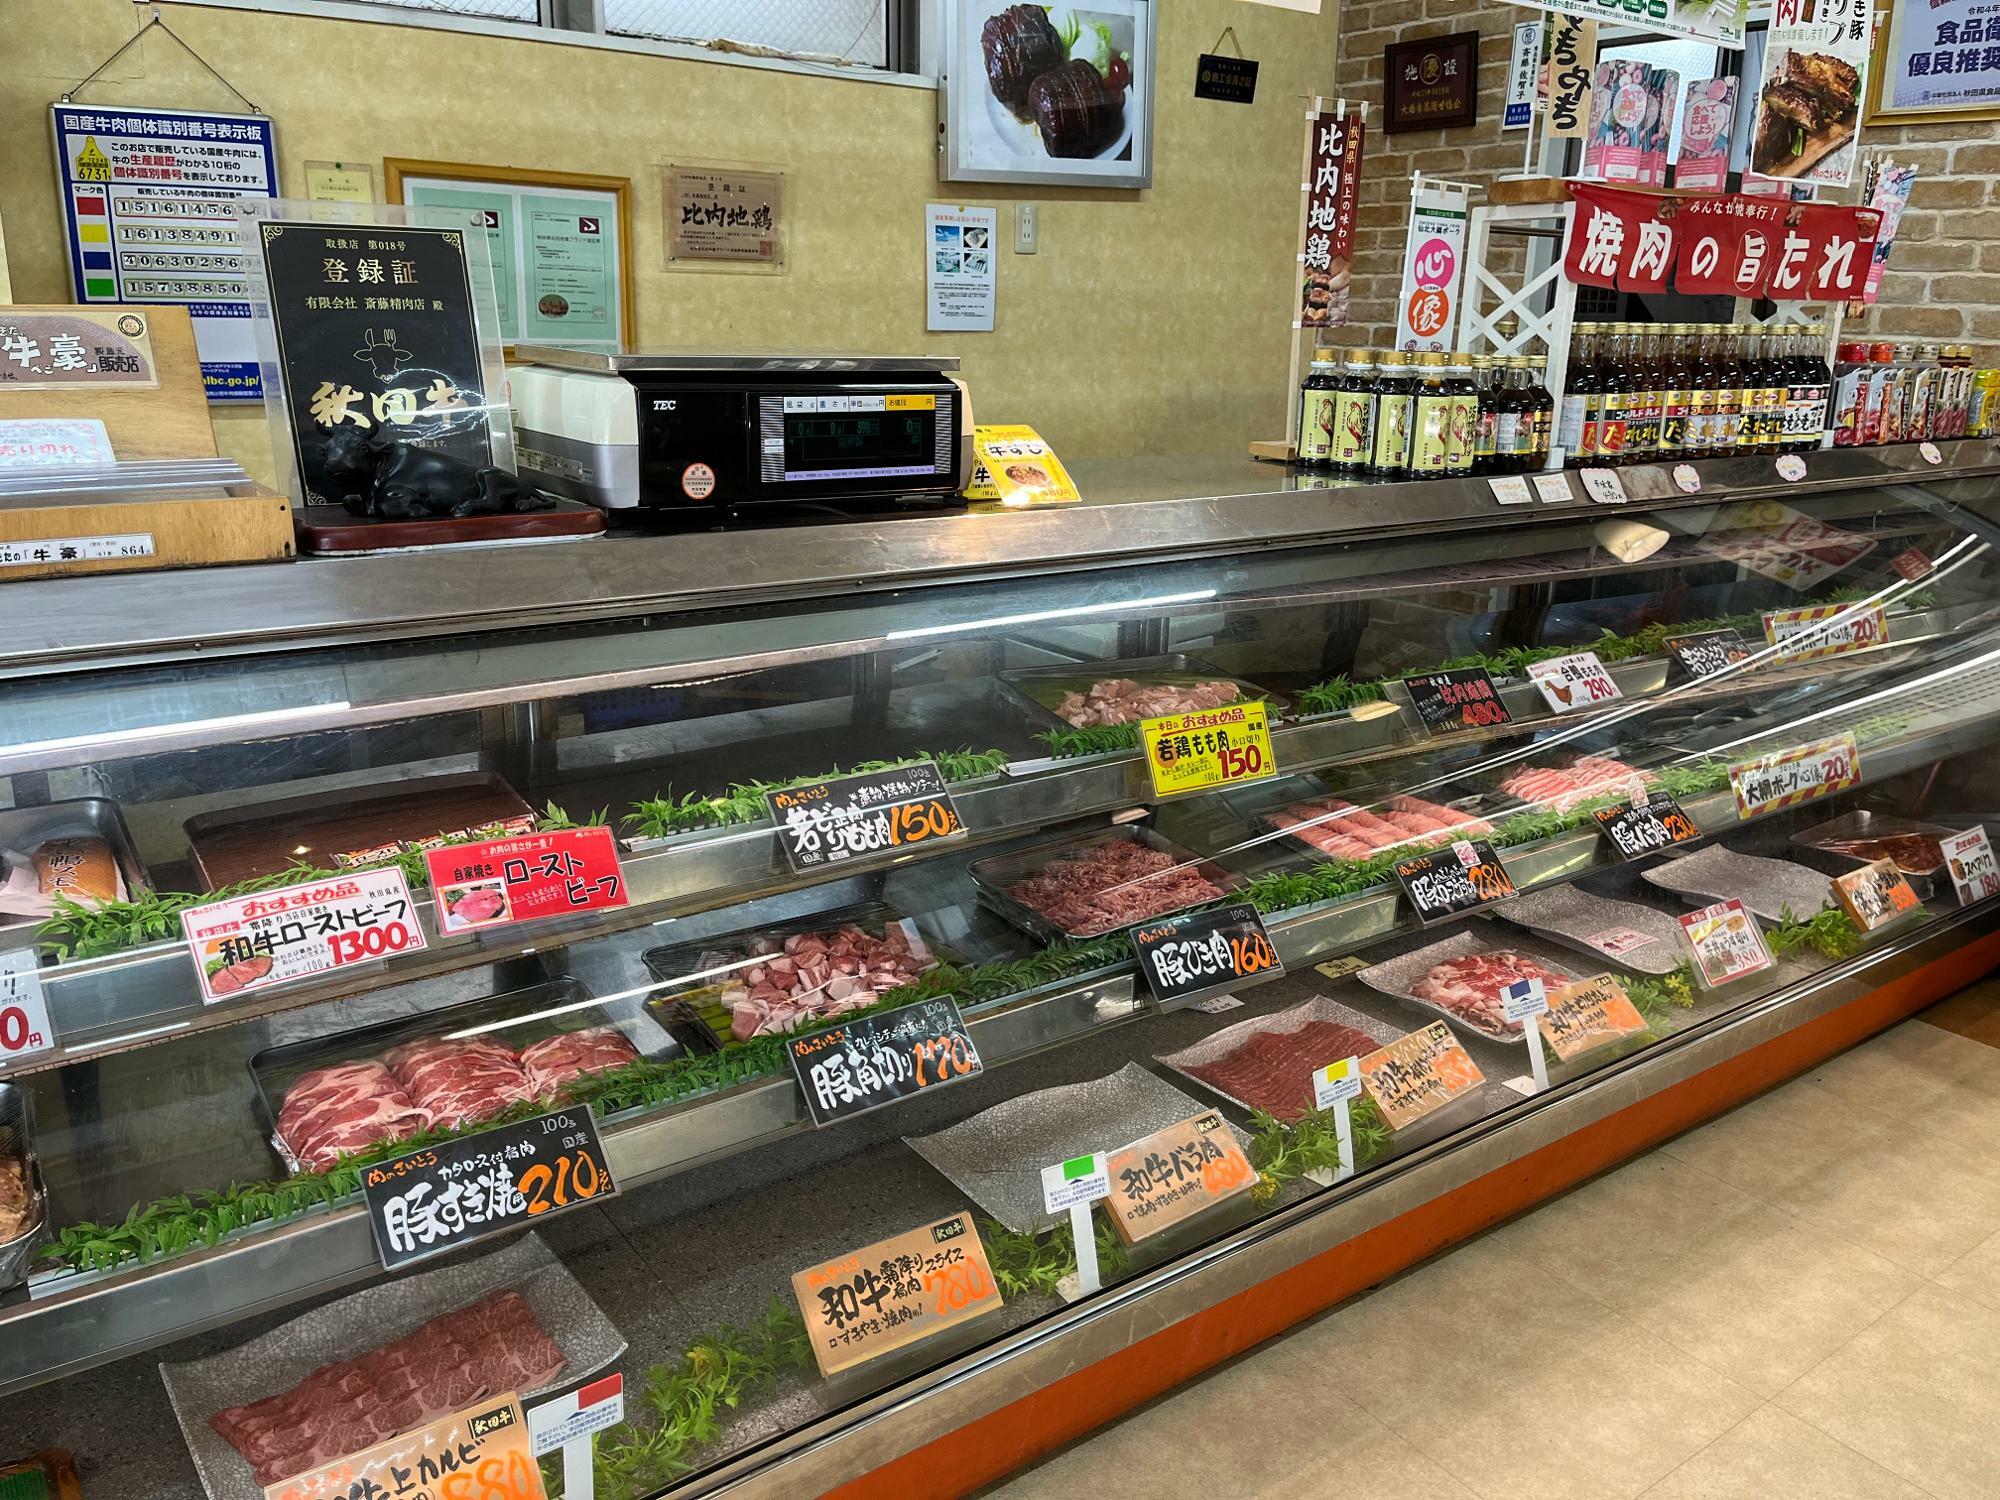 店内のショーケースには秋田県産のお肉がズラリ